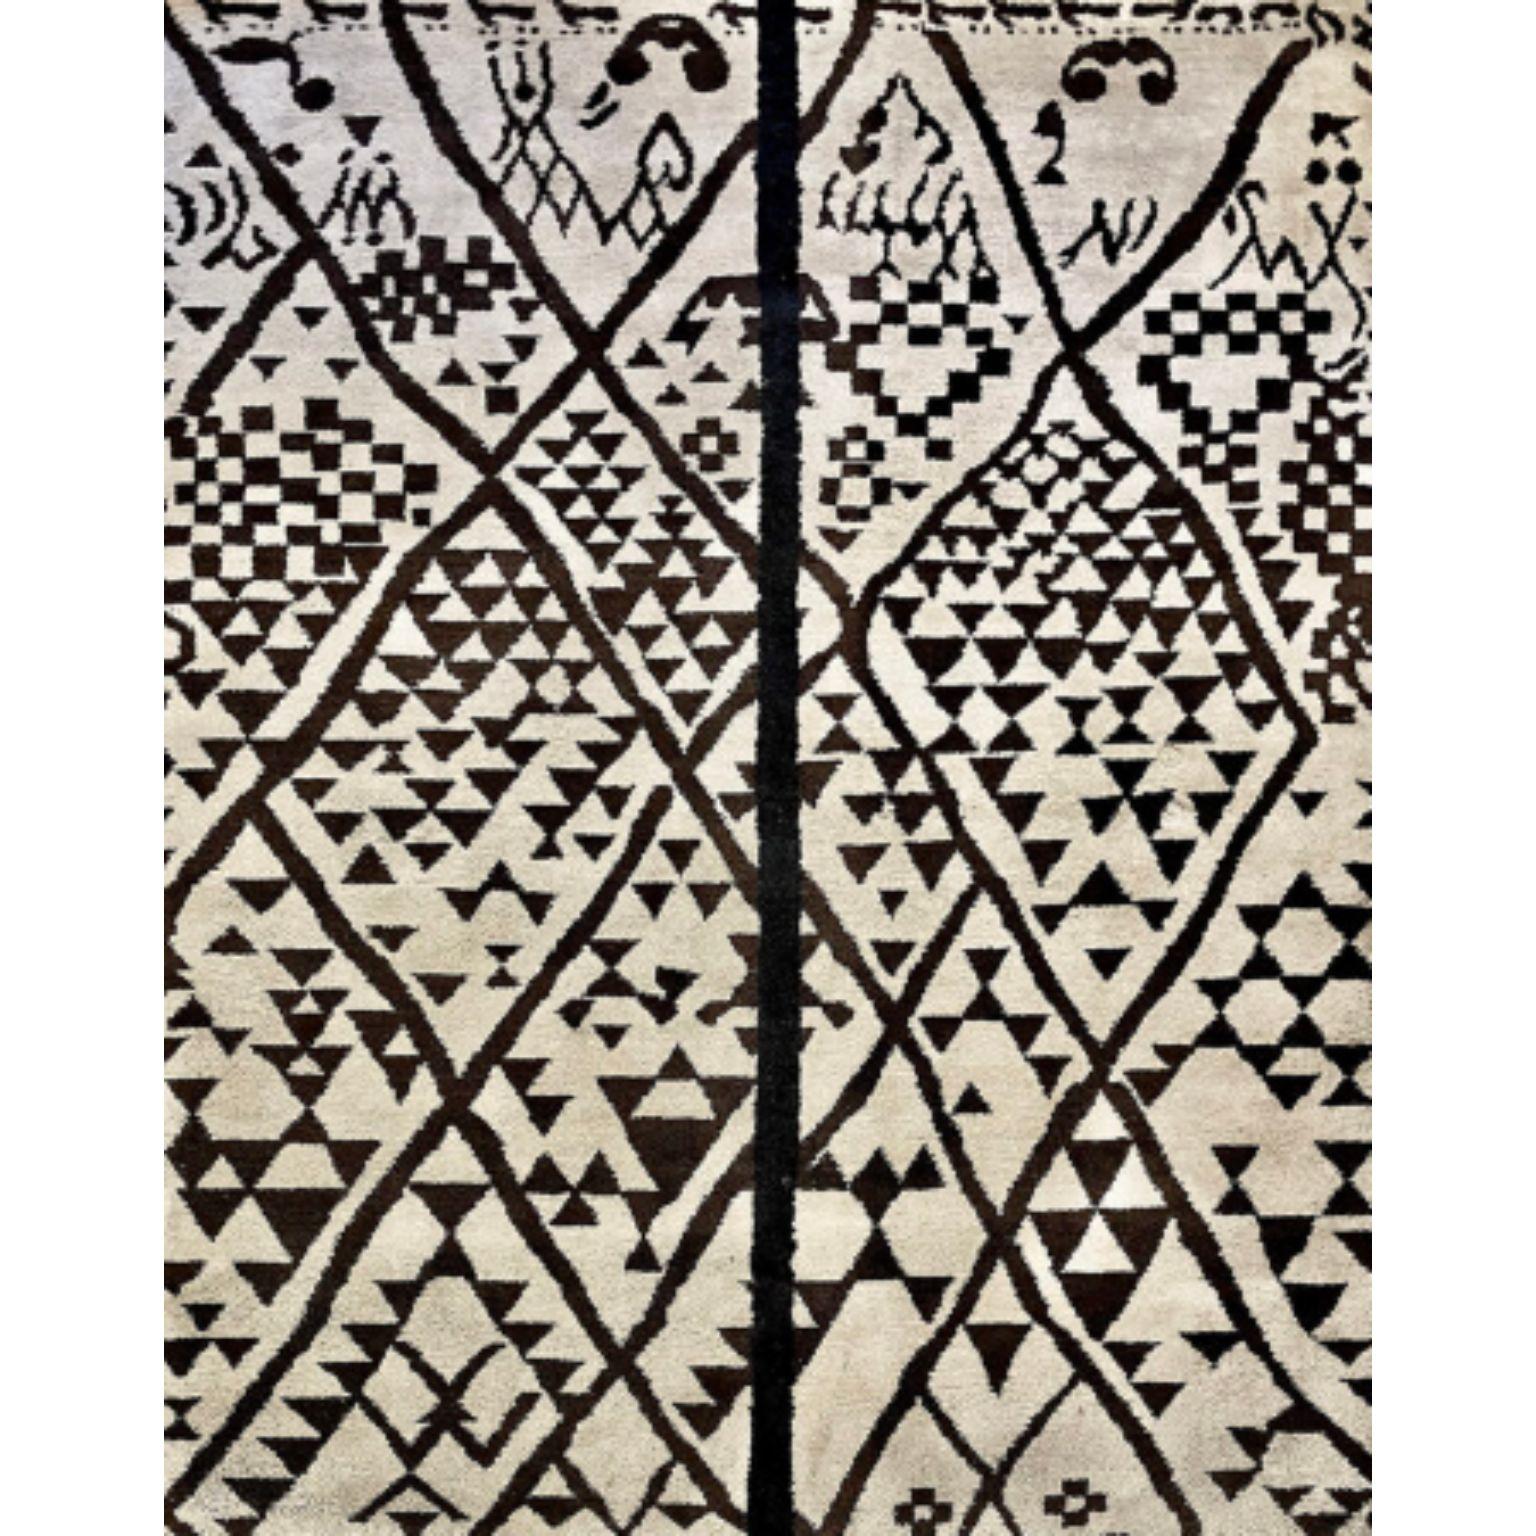 AFRA Teppich von Illulian
Abmessungen: T300 x H200 cm 
MATERIALIEN: Wolle 80%, Seide 20%
Je nach MATERIAL und Größe sind verschiedene Varianten möglich und die Preise können variieren.

Illulian, eine historische und prestigeträchtige Teppichmarke,